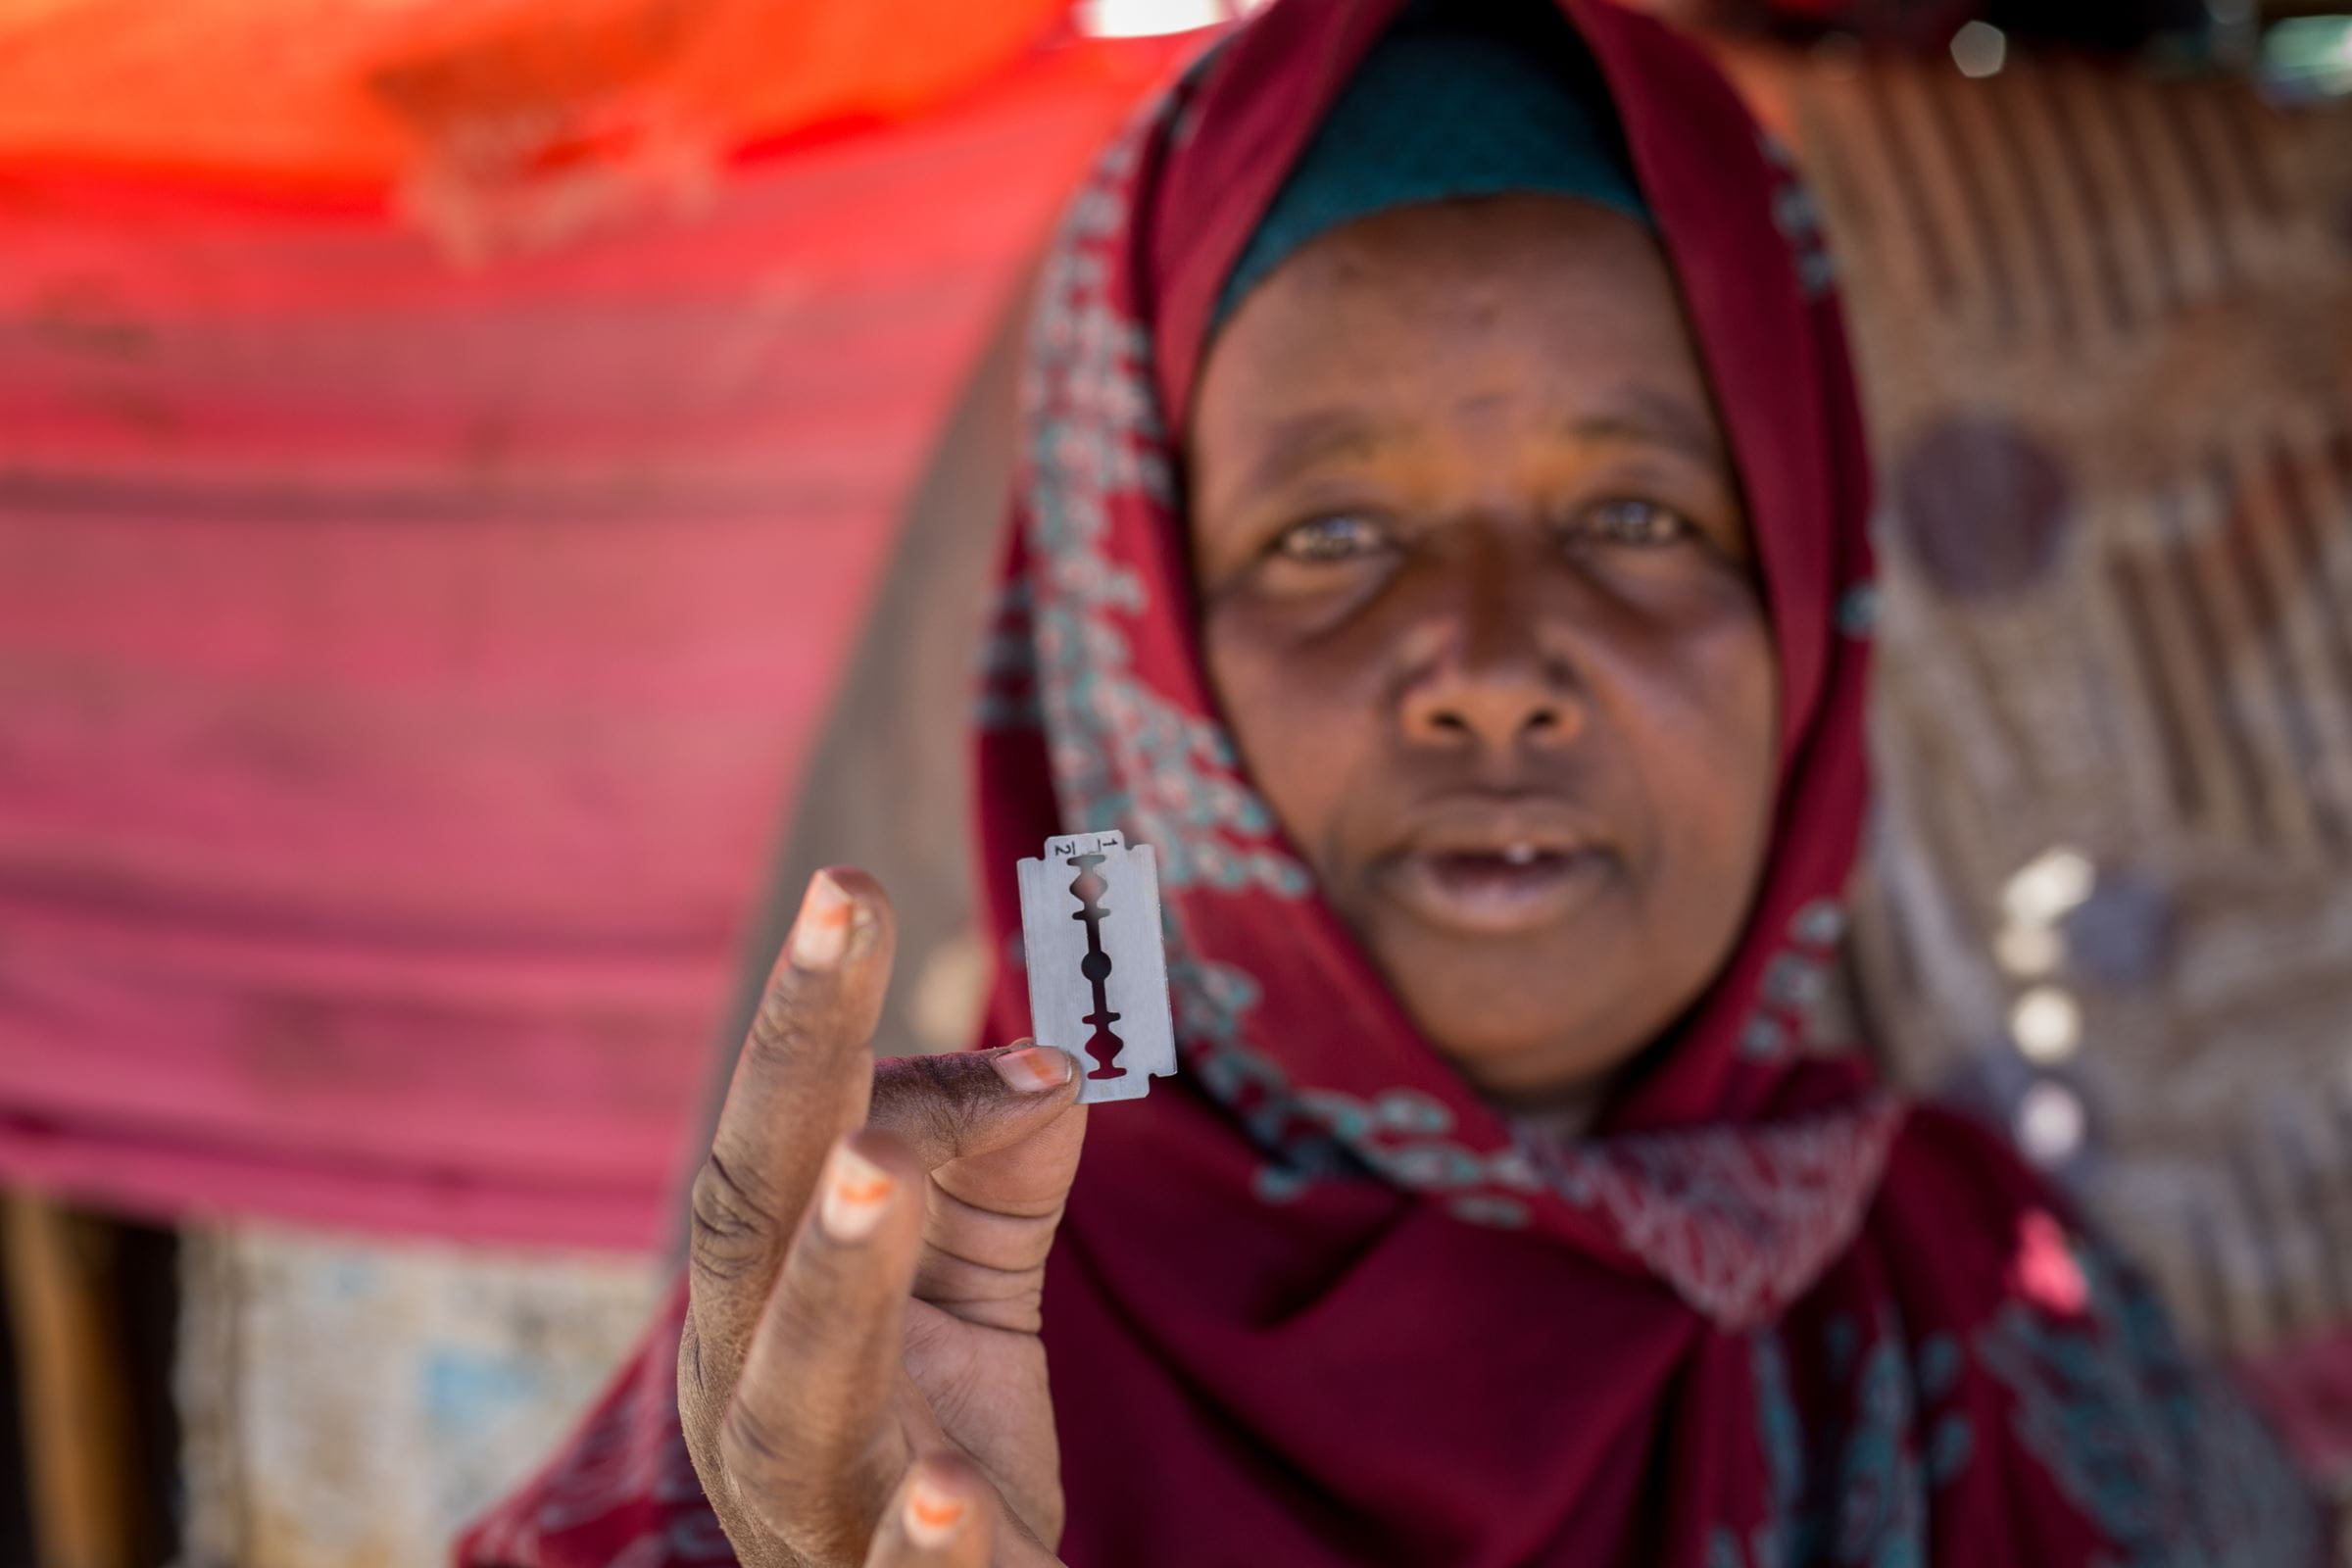 Eine ehemalige Beschneiderin aus Somaliland hält eine Rasierklinge in die Kamera (Quelle: Fairpicture)